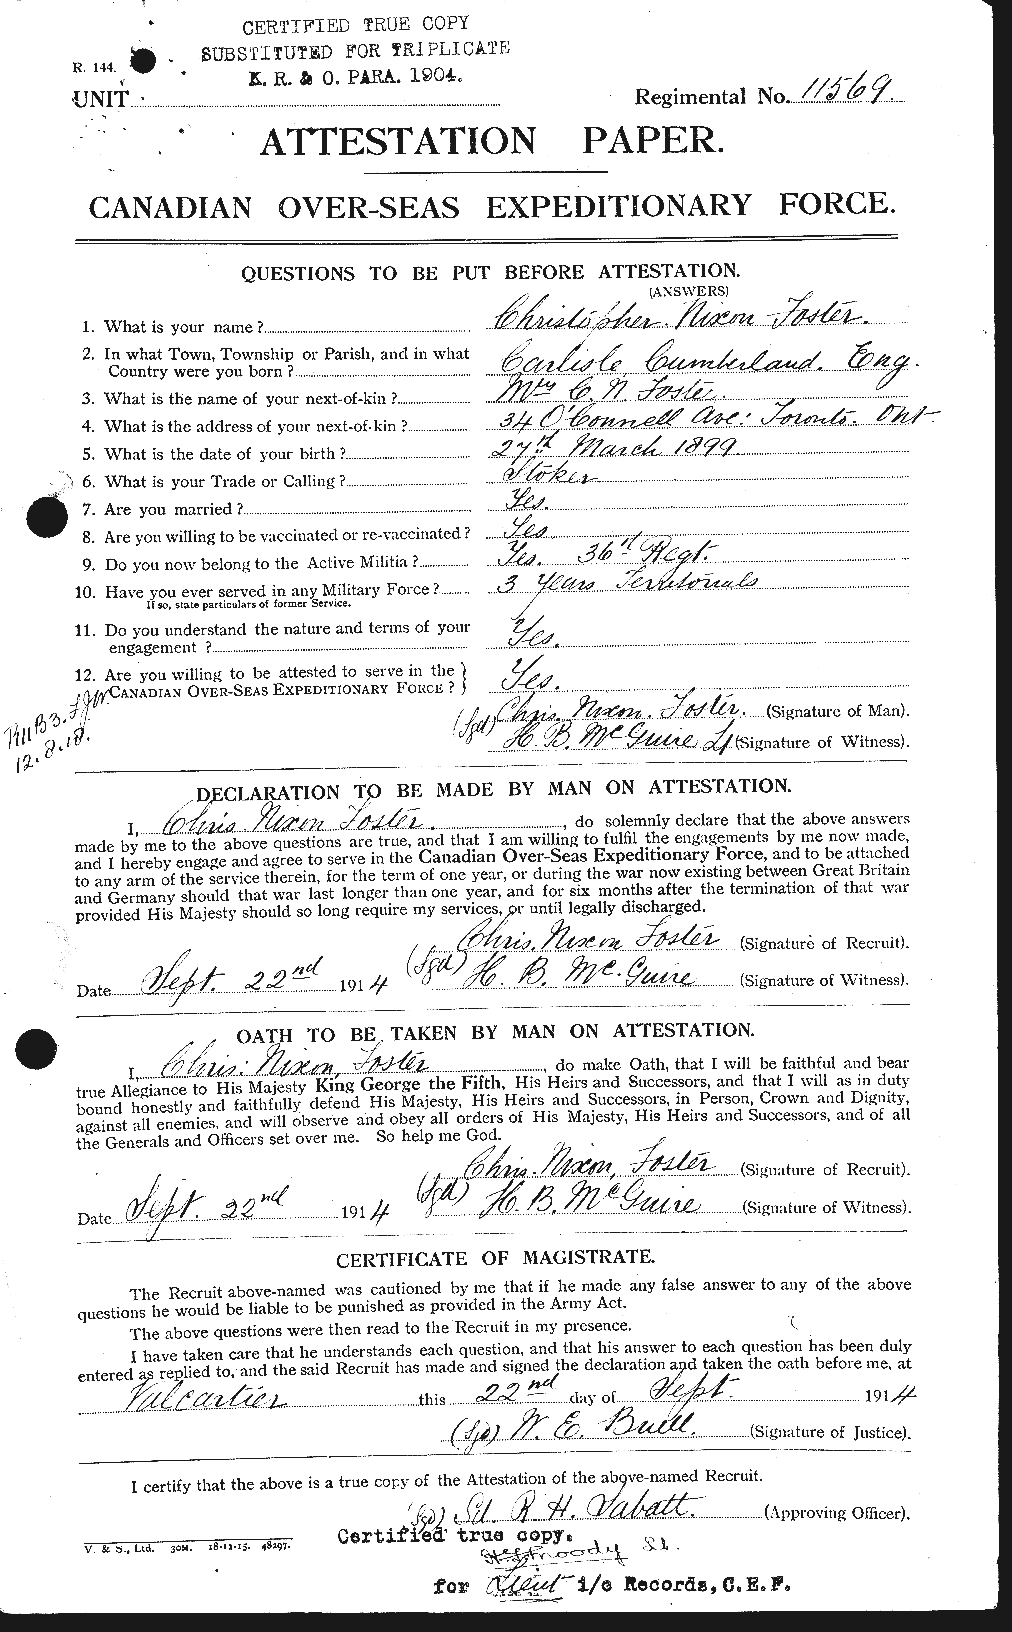 Dossiers du Personnel de la Première Guerre mondiale - CEC 330532a